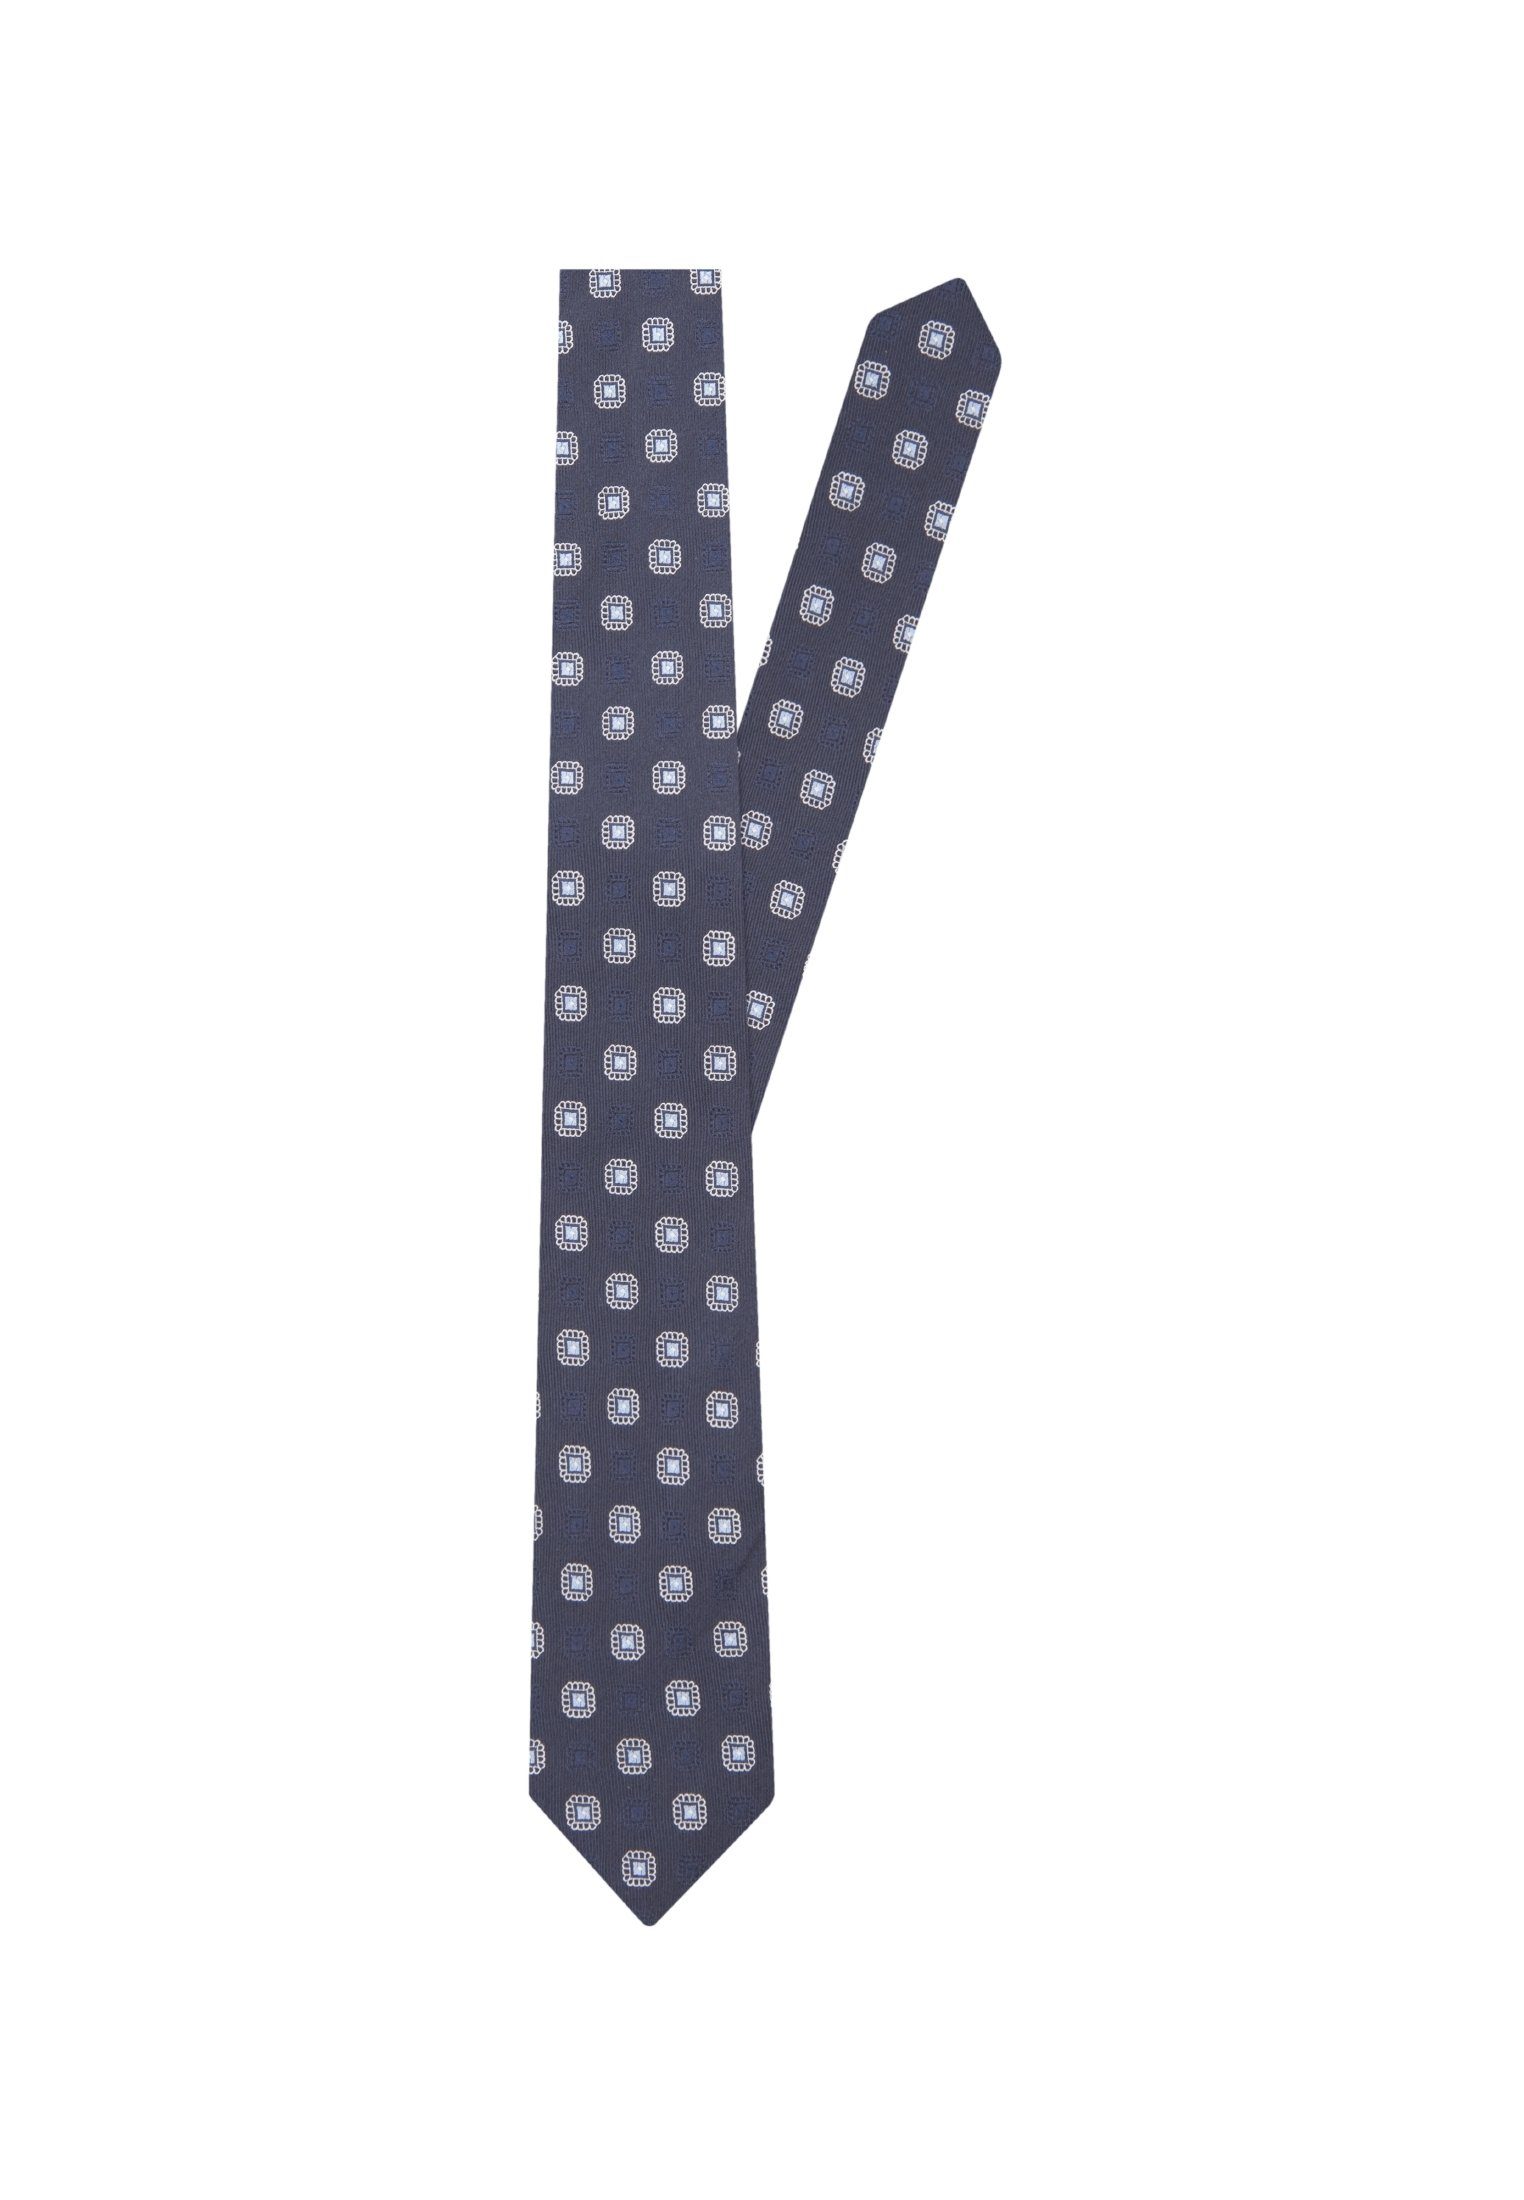 Goedkope stropdassen online de ideale stropdas | OTTO